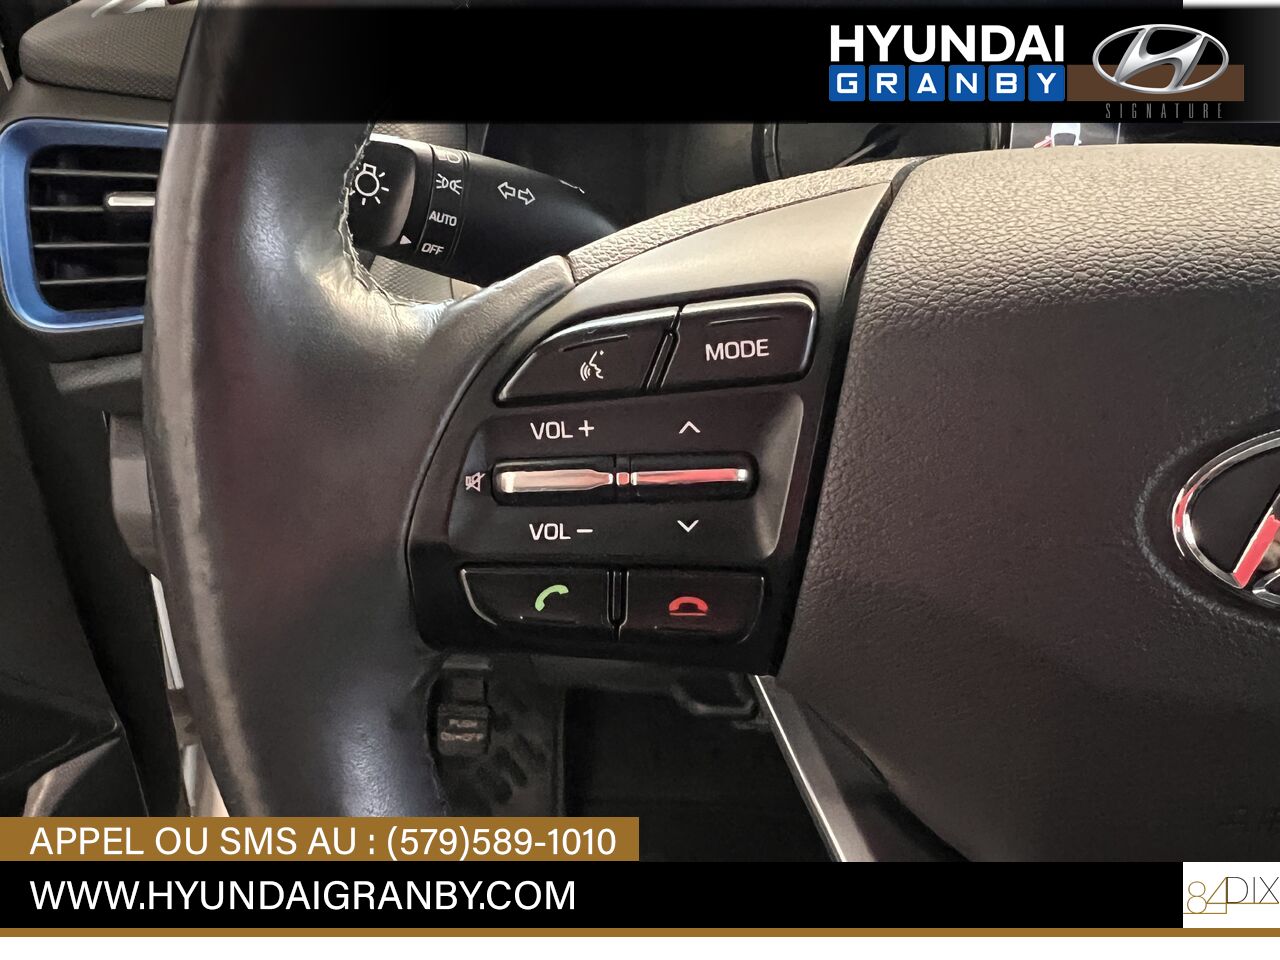 2017 Hyundai Ioniq hybride Granby - photo #15